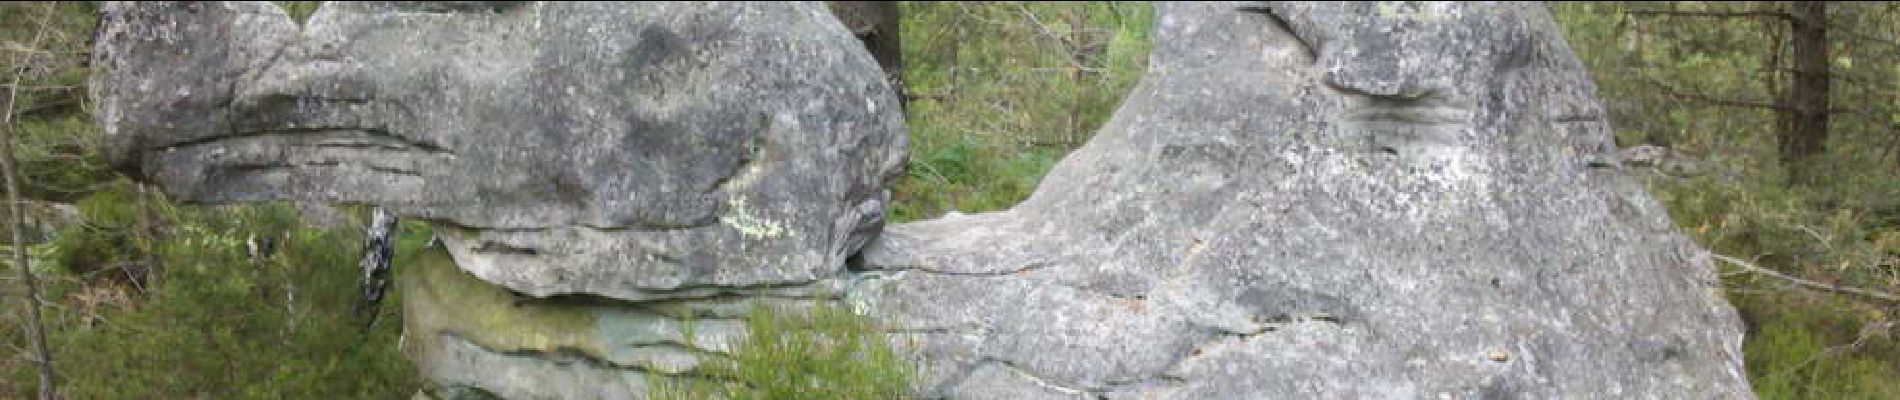 Point of interest Fontainebleau - 18 - Un dromadaire fossilisé - Photo